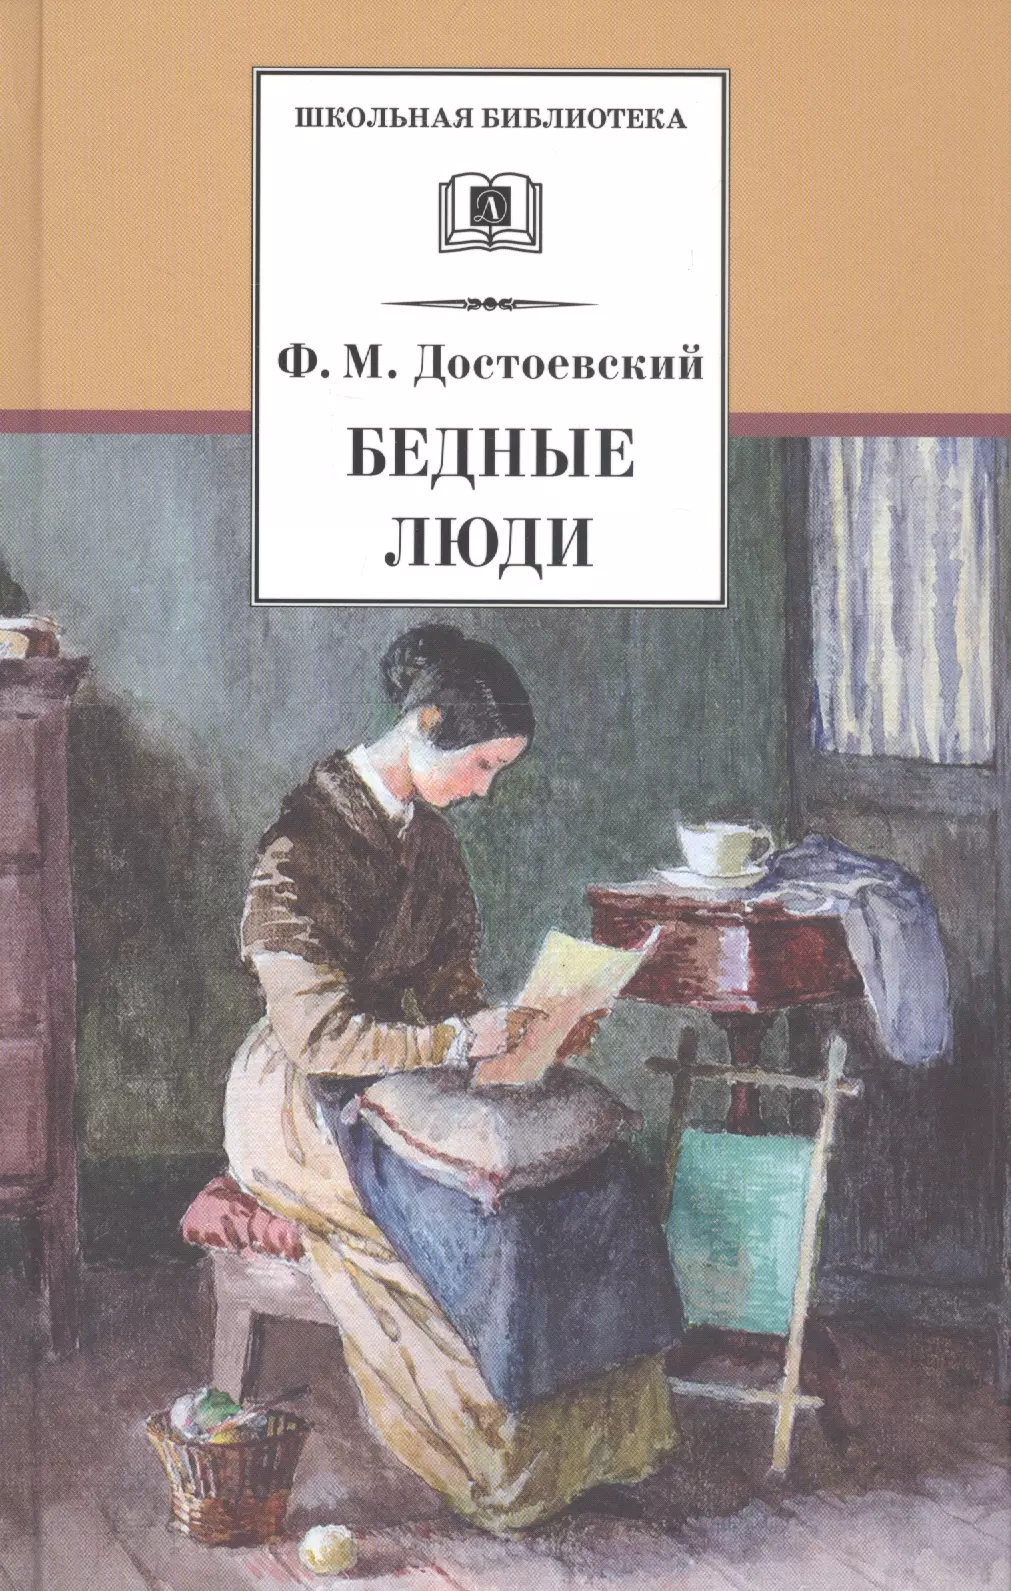 «Бедные люди», «двойник», ф.м. Достоевский (1846)